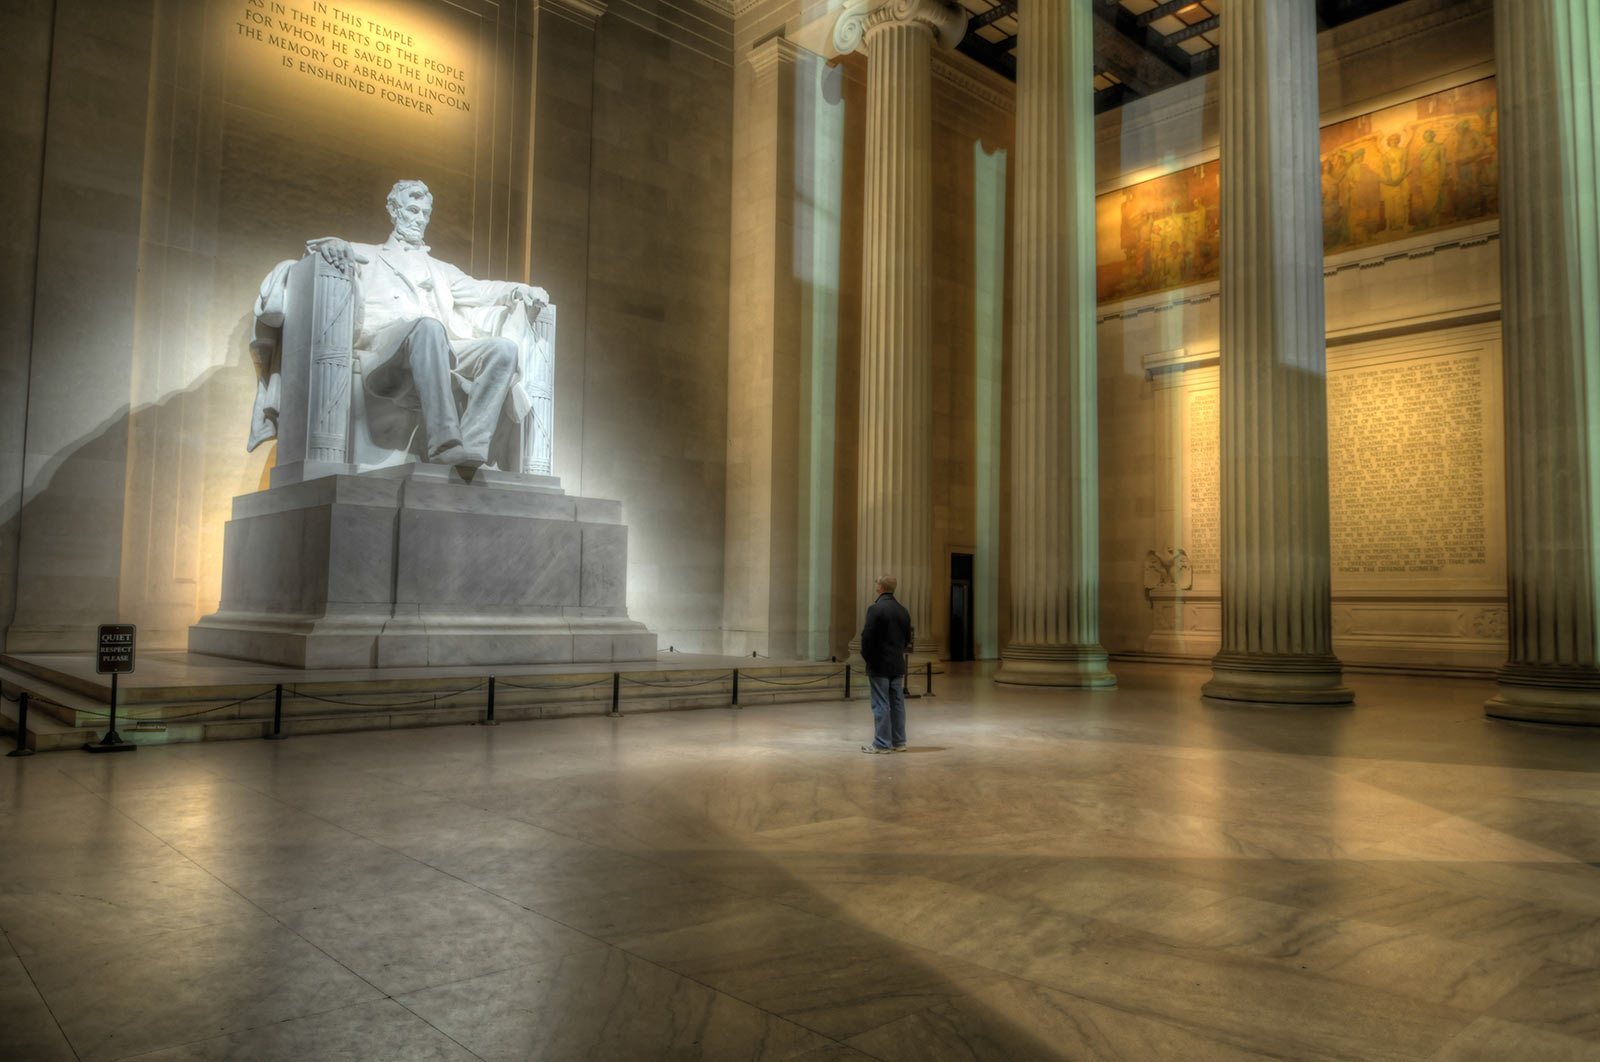 @brandonmkopp - Besucher am Lincoln Memorial - Washington, DC